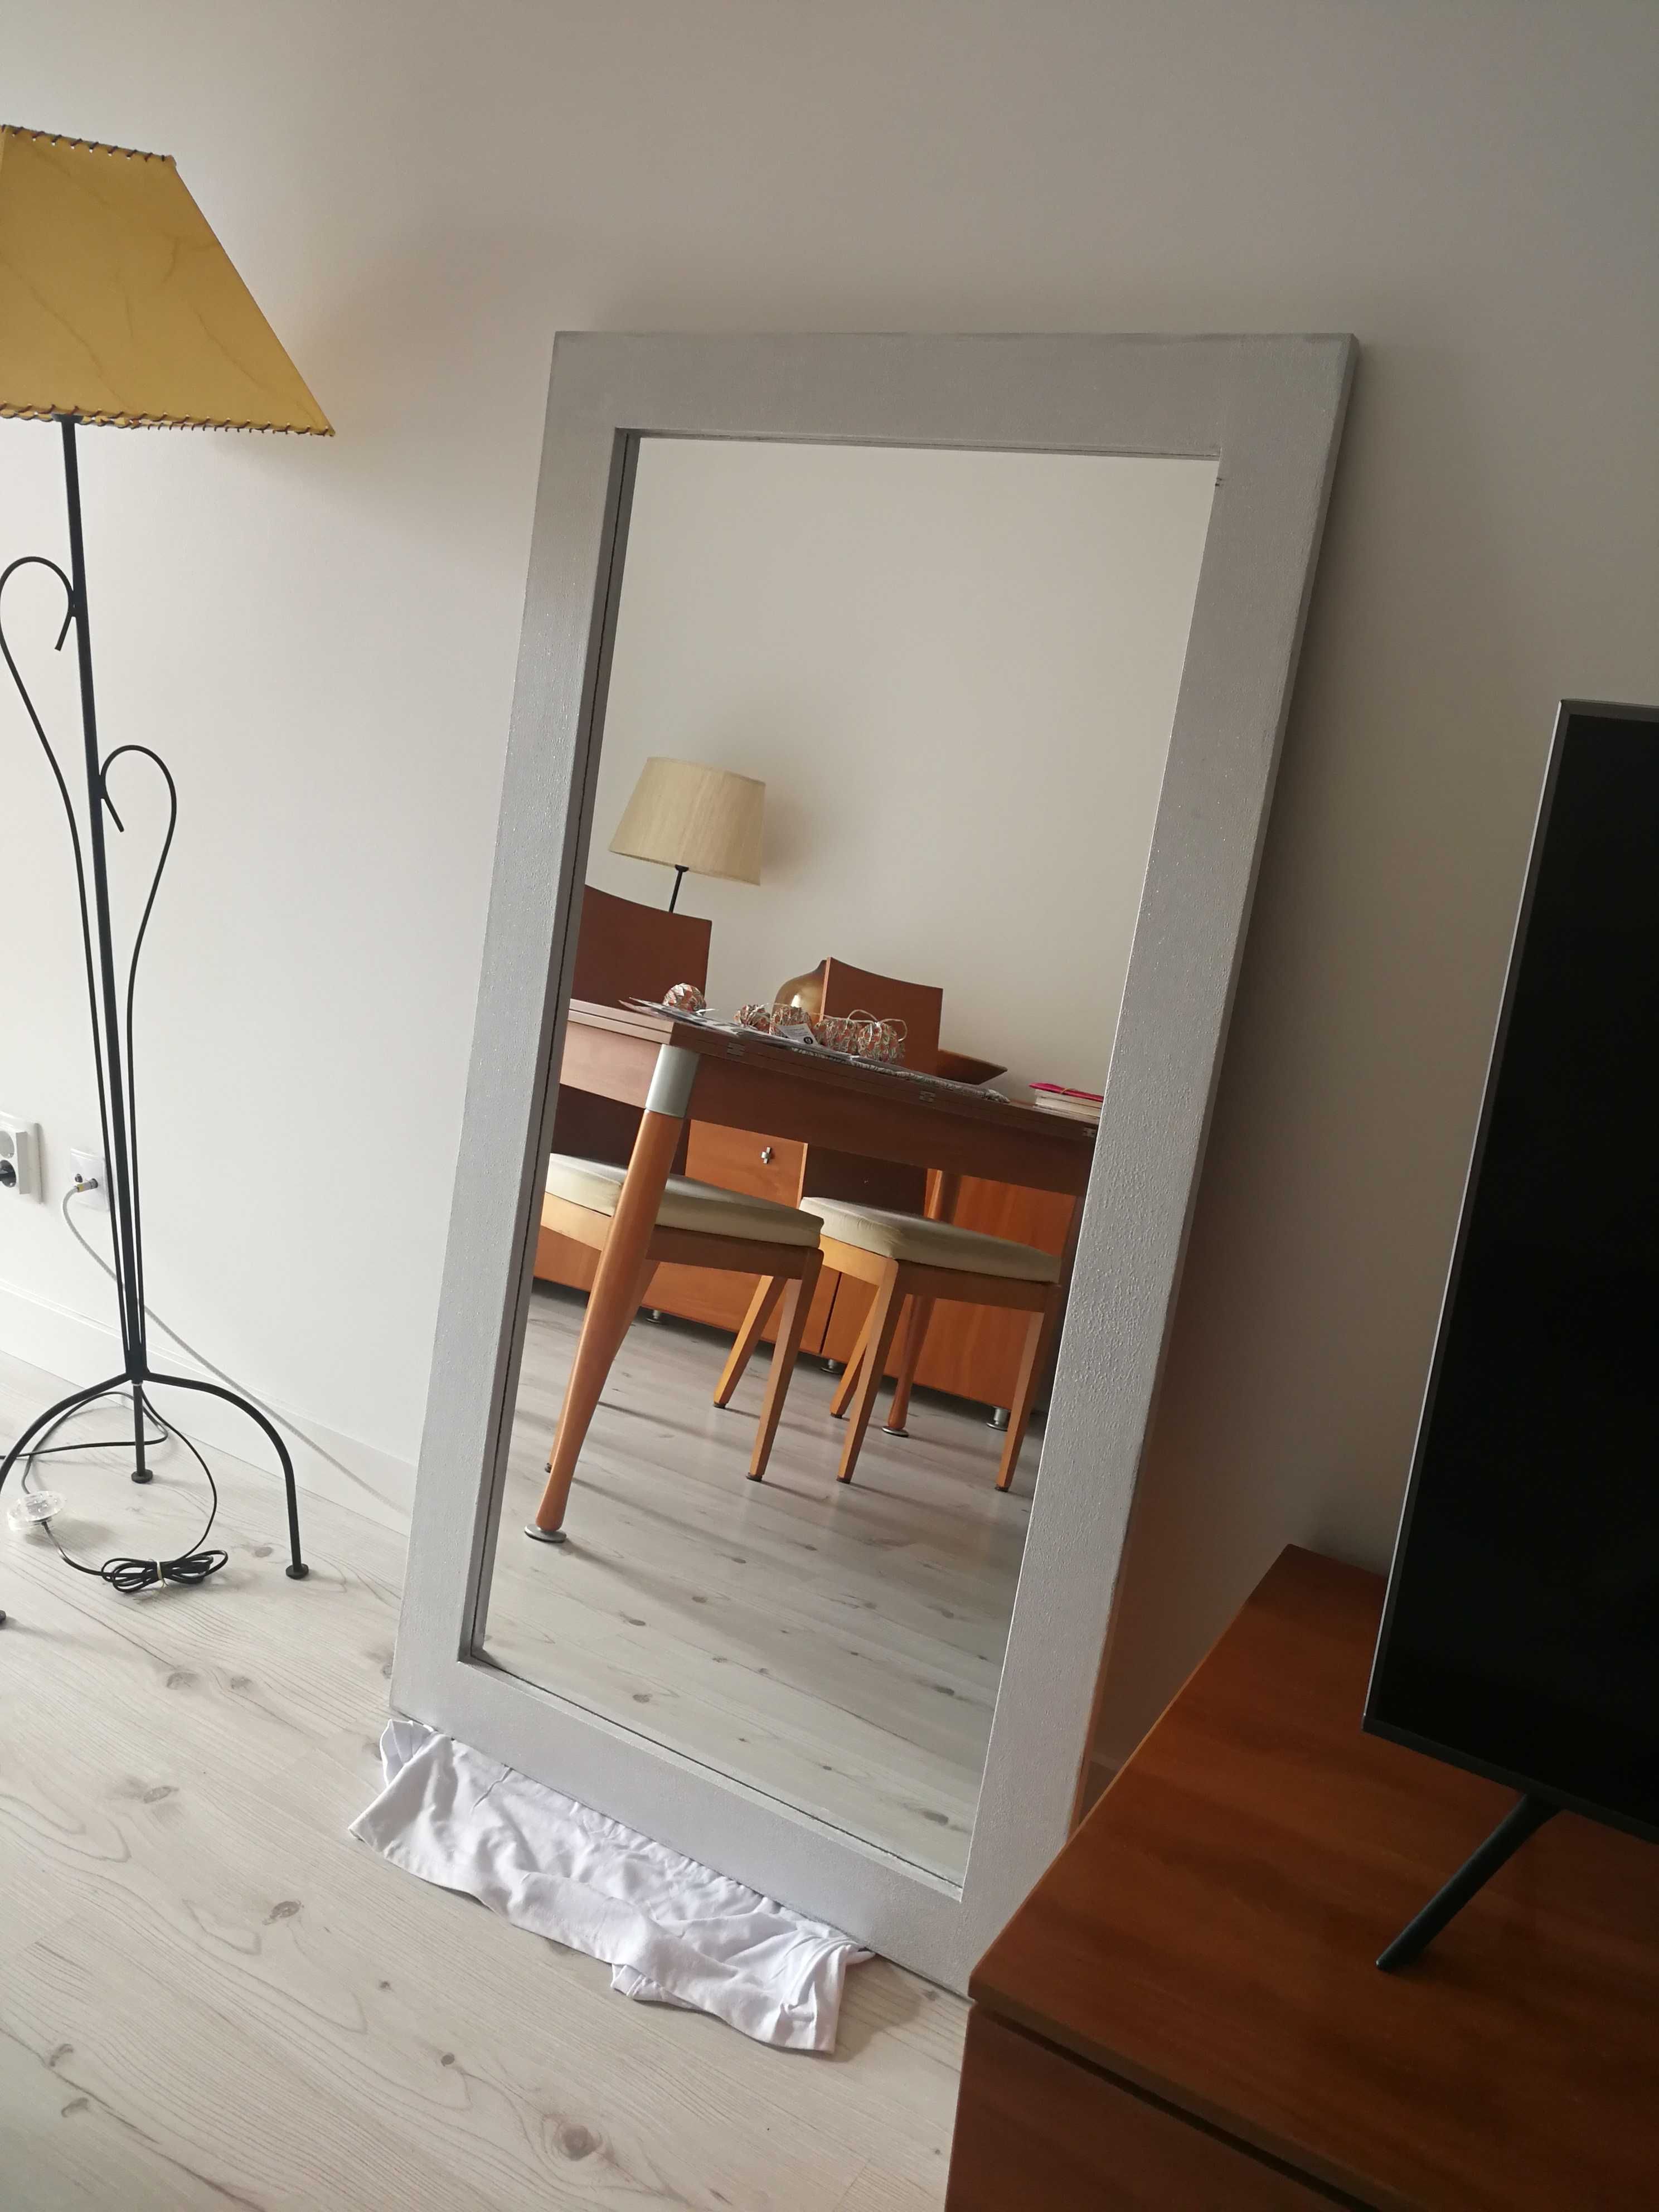 Espelho com moldura em madeira - pintada de cinza